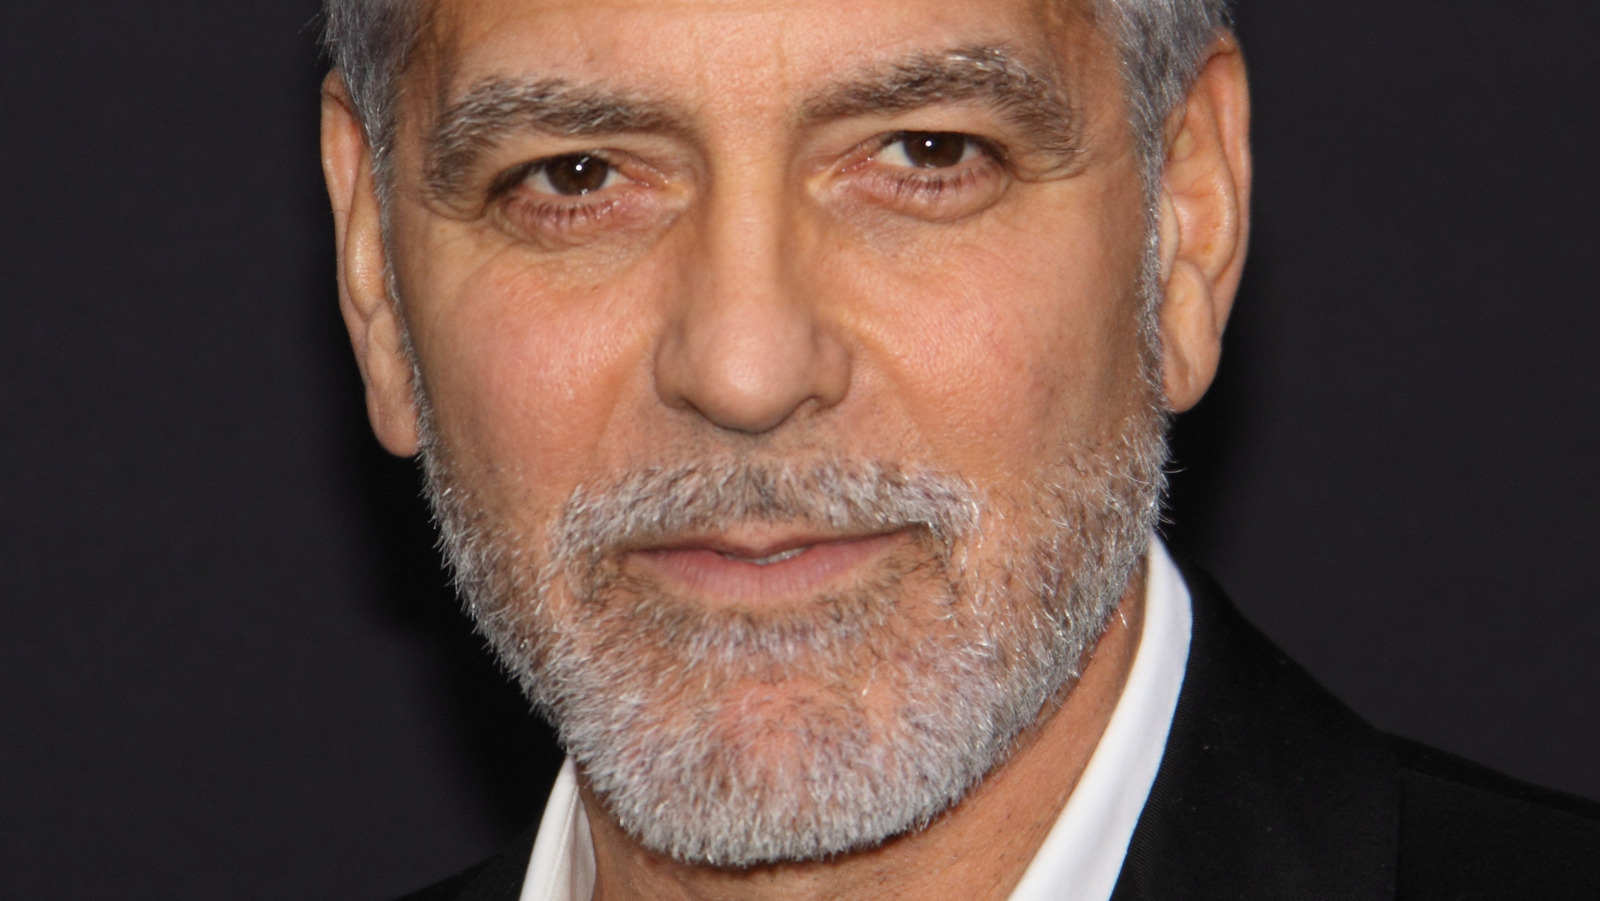 George Clooney's Hair Secrets: How He Keeps His Salt and Pepper Locks Looking Great - wide 6